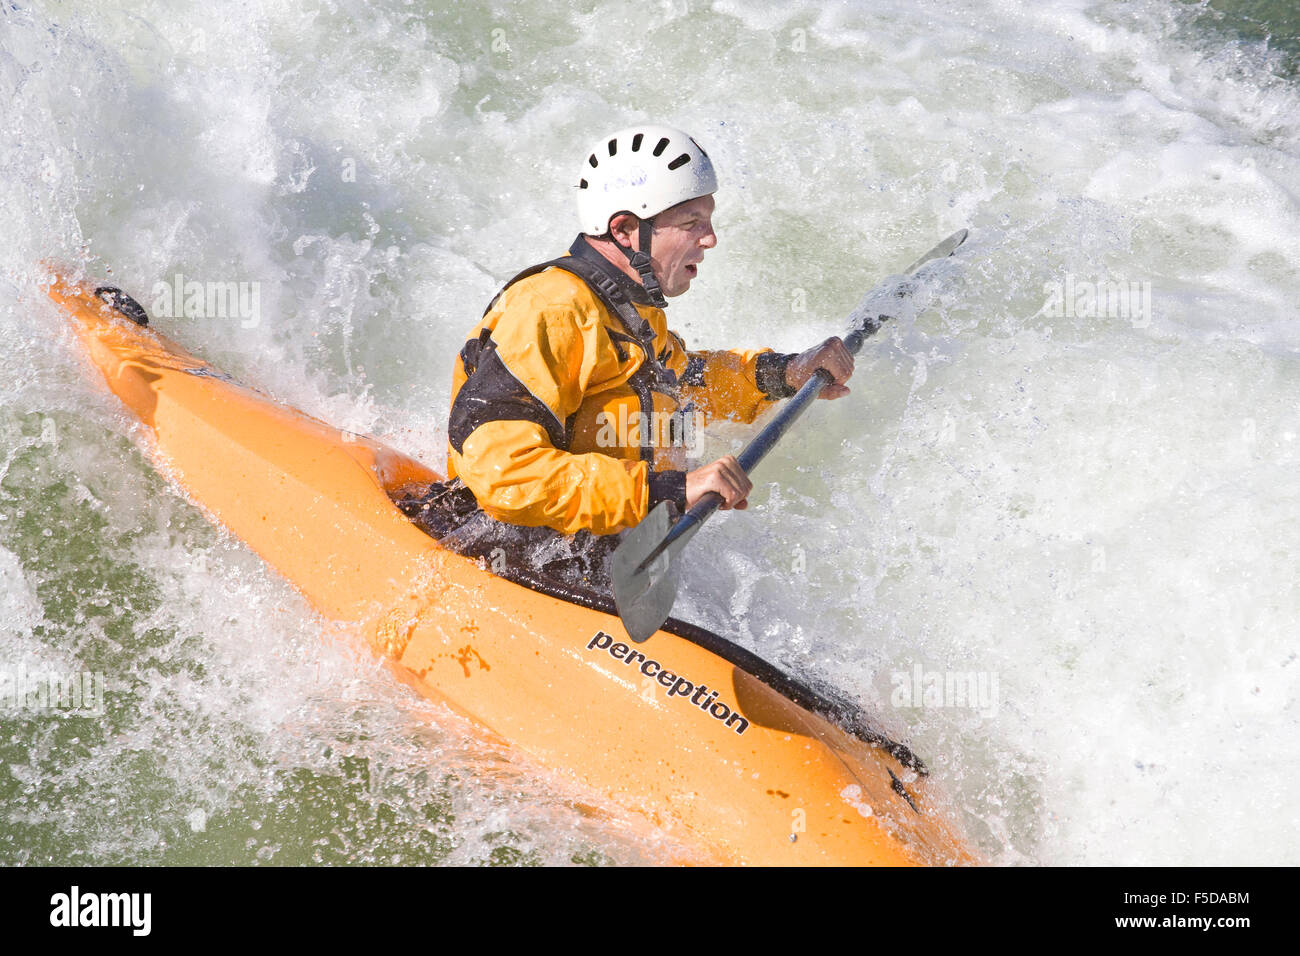 Un whitewater kayaker naviga un nuovo whitewater correre in un parco fluviale in curva, Oregon, sul fiume Deschutes Foto Stock